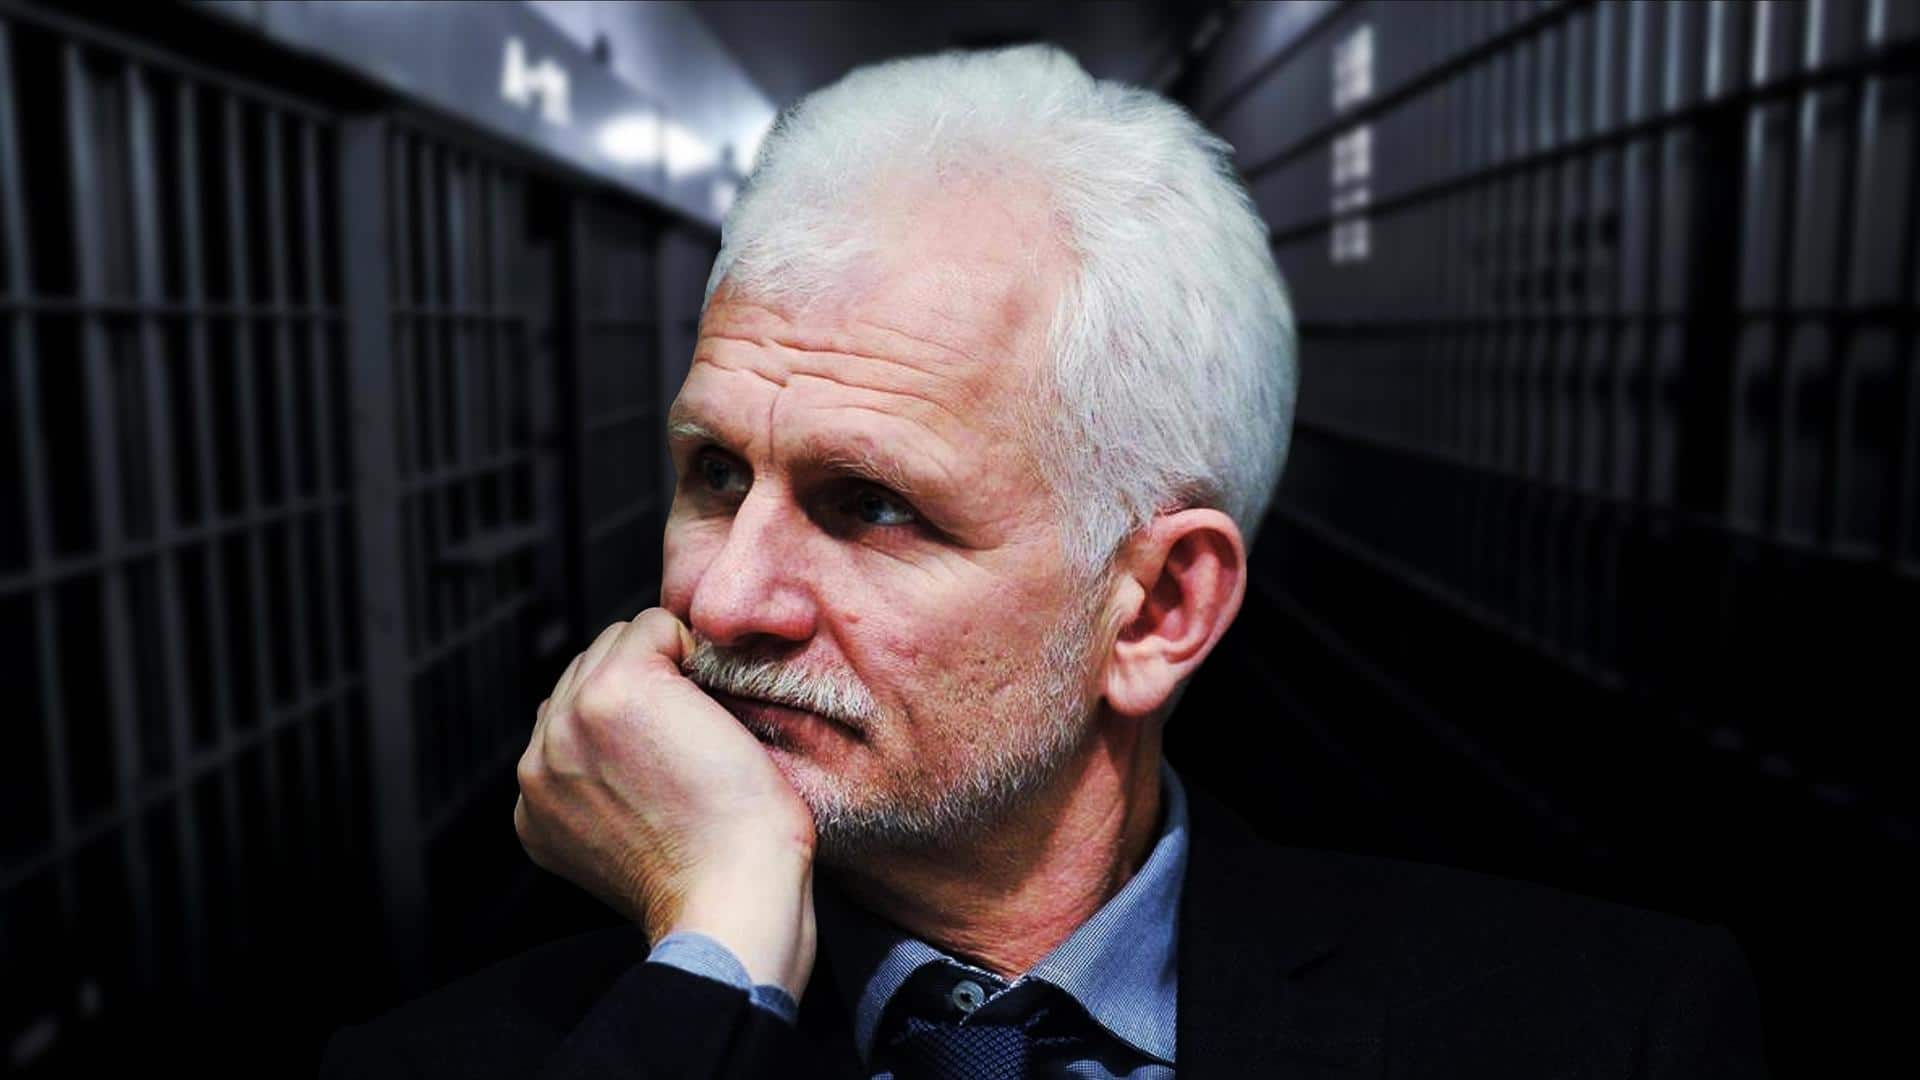 Nobel laureate Ales Bialiatski sentenced to 10 years in jail